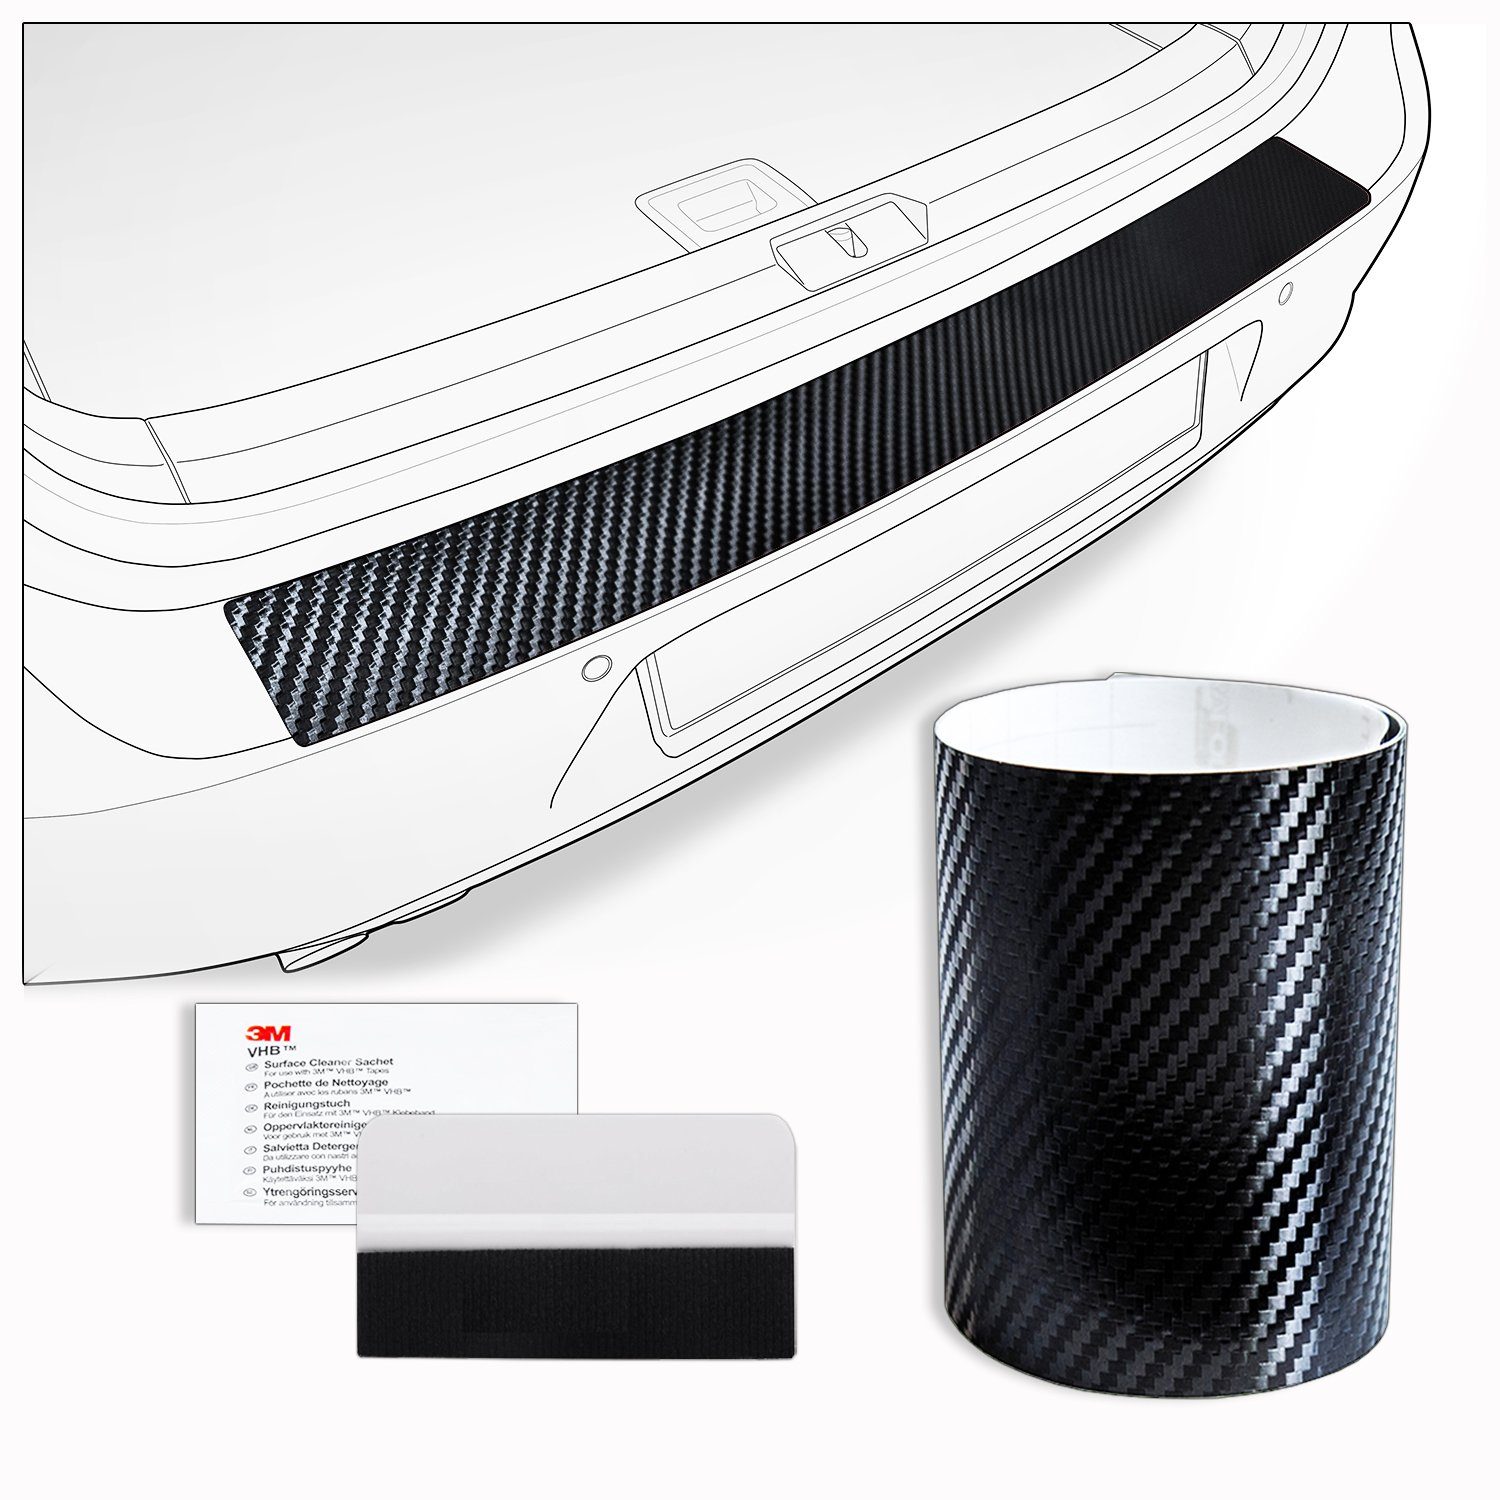 tuning-art Ladekantenschutzfolie FL134 Ladekantenschutz Folie mit Rakel für Honda Civic 10 X 2017- Carbon-Look